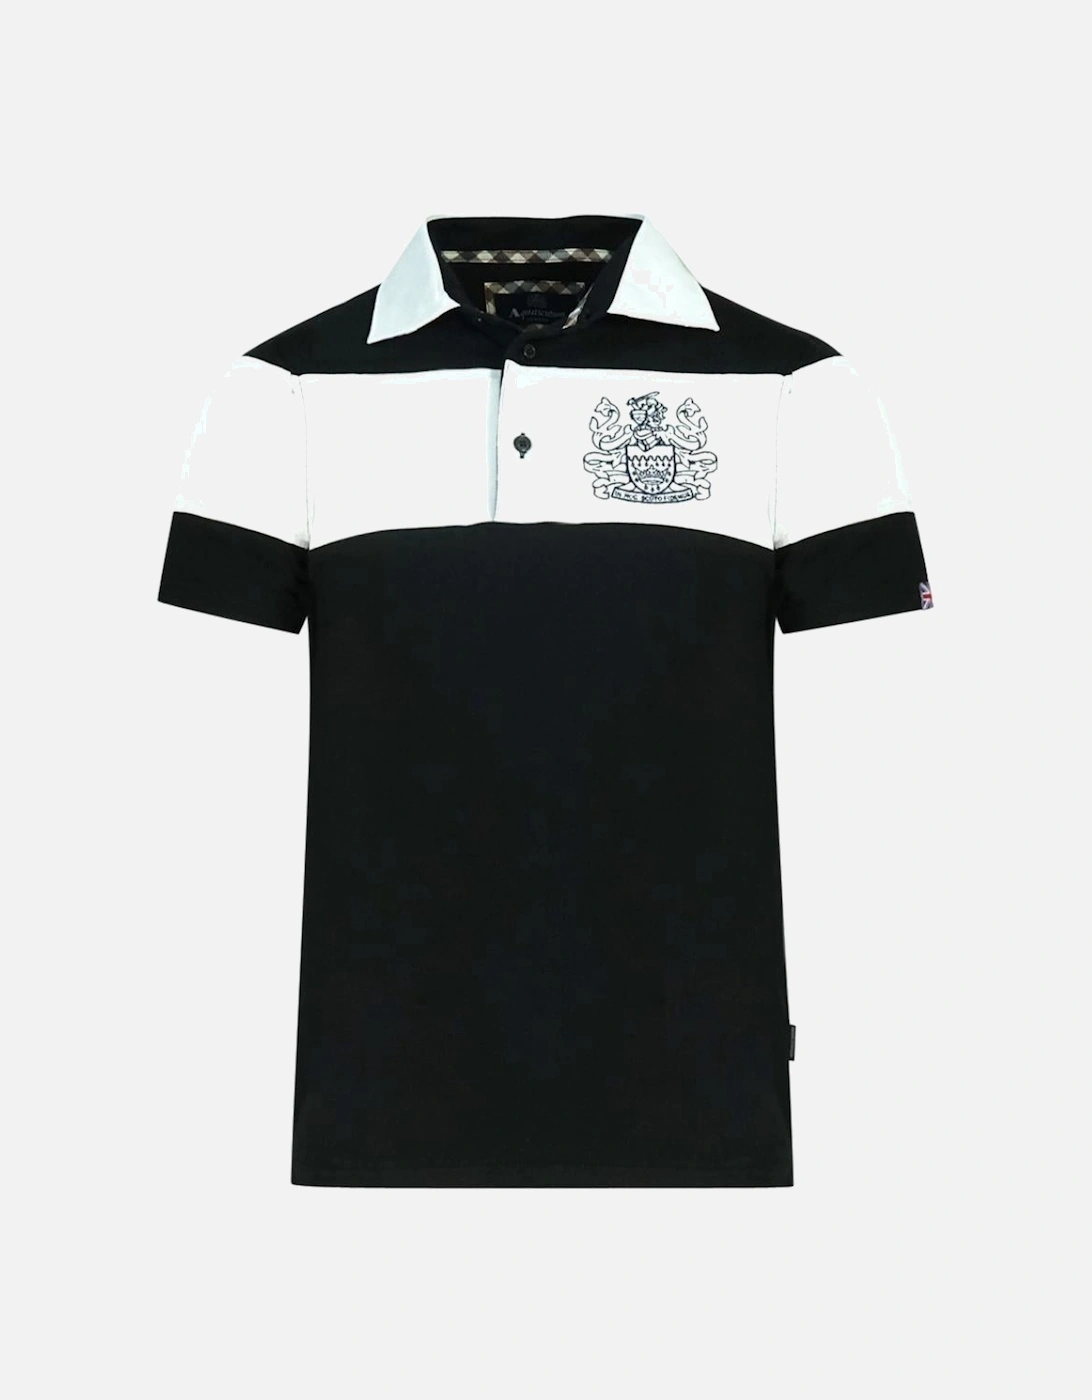 Colour Block Aldis Crest Chest Logo Black Polo Shirt, 3 of 2